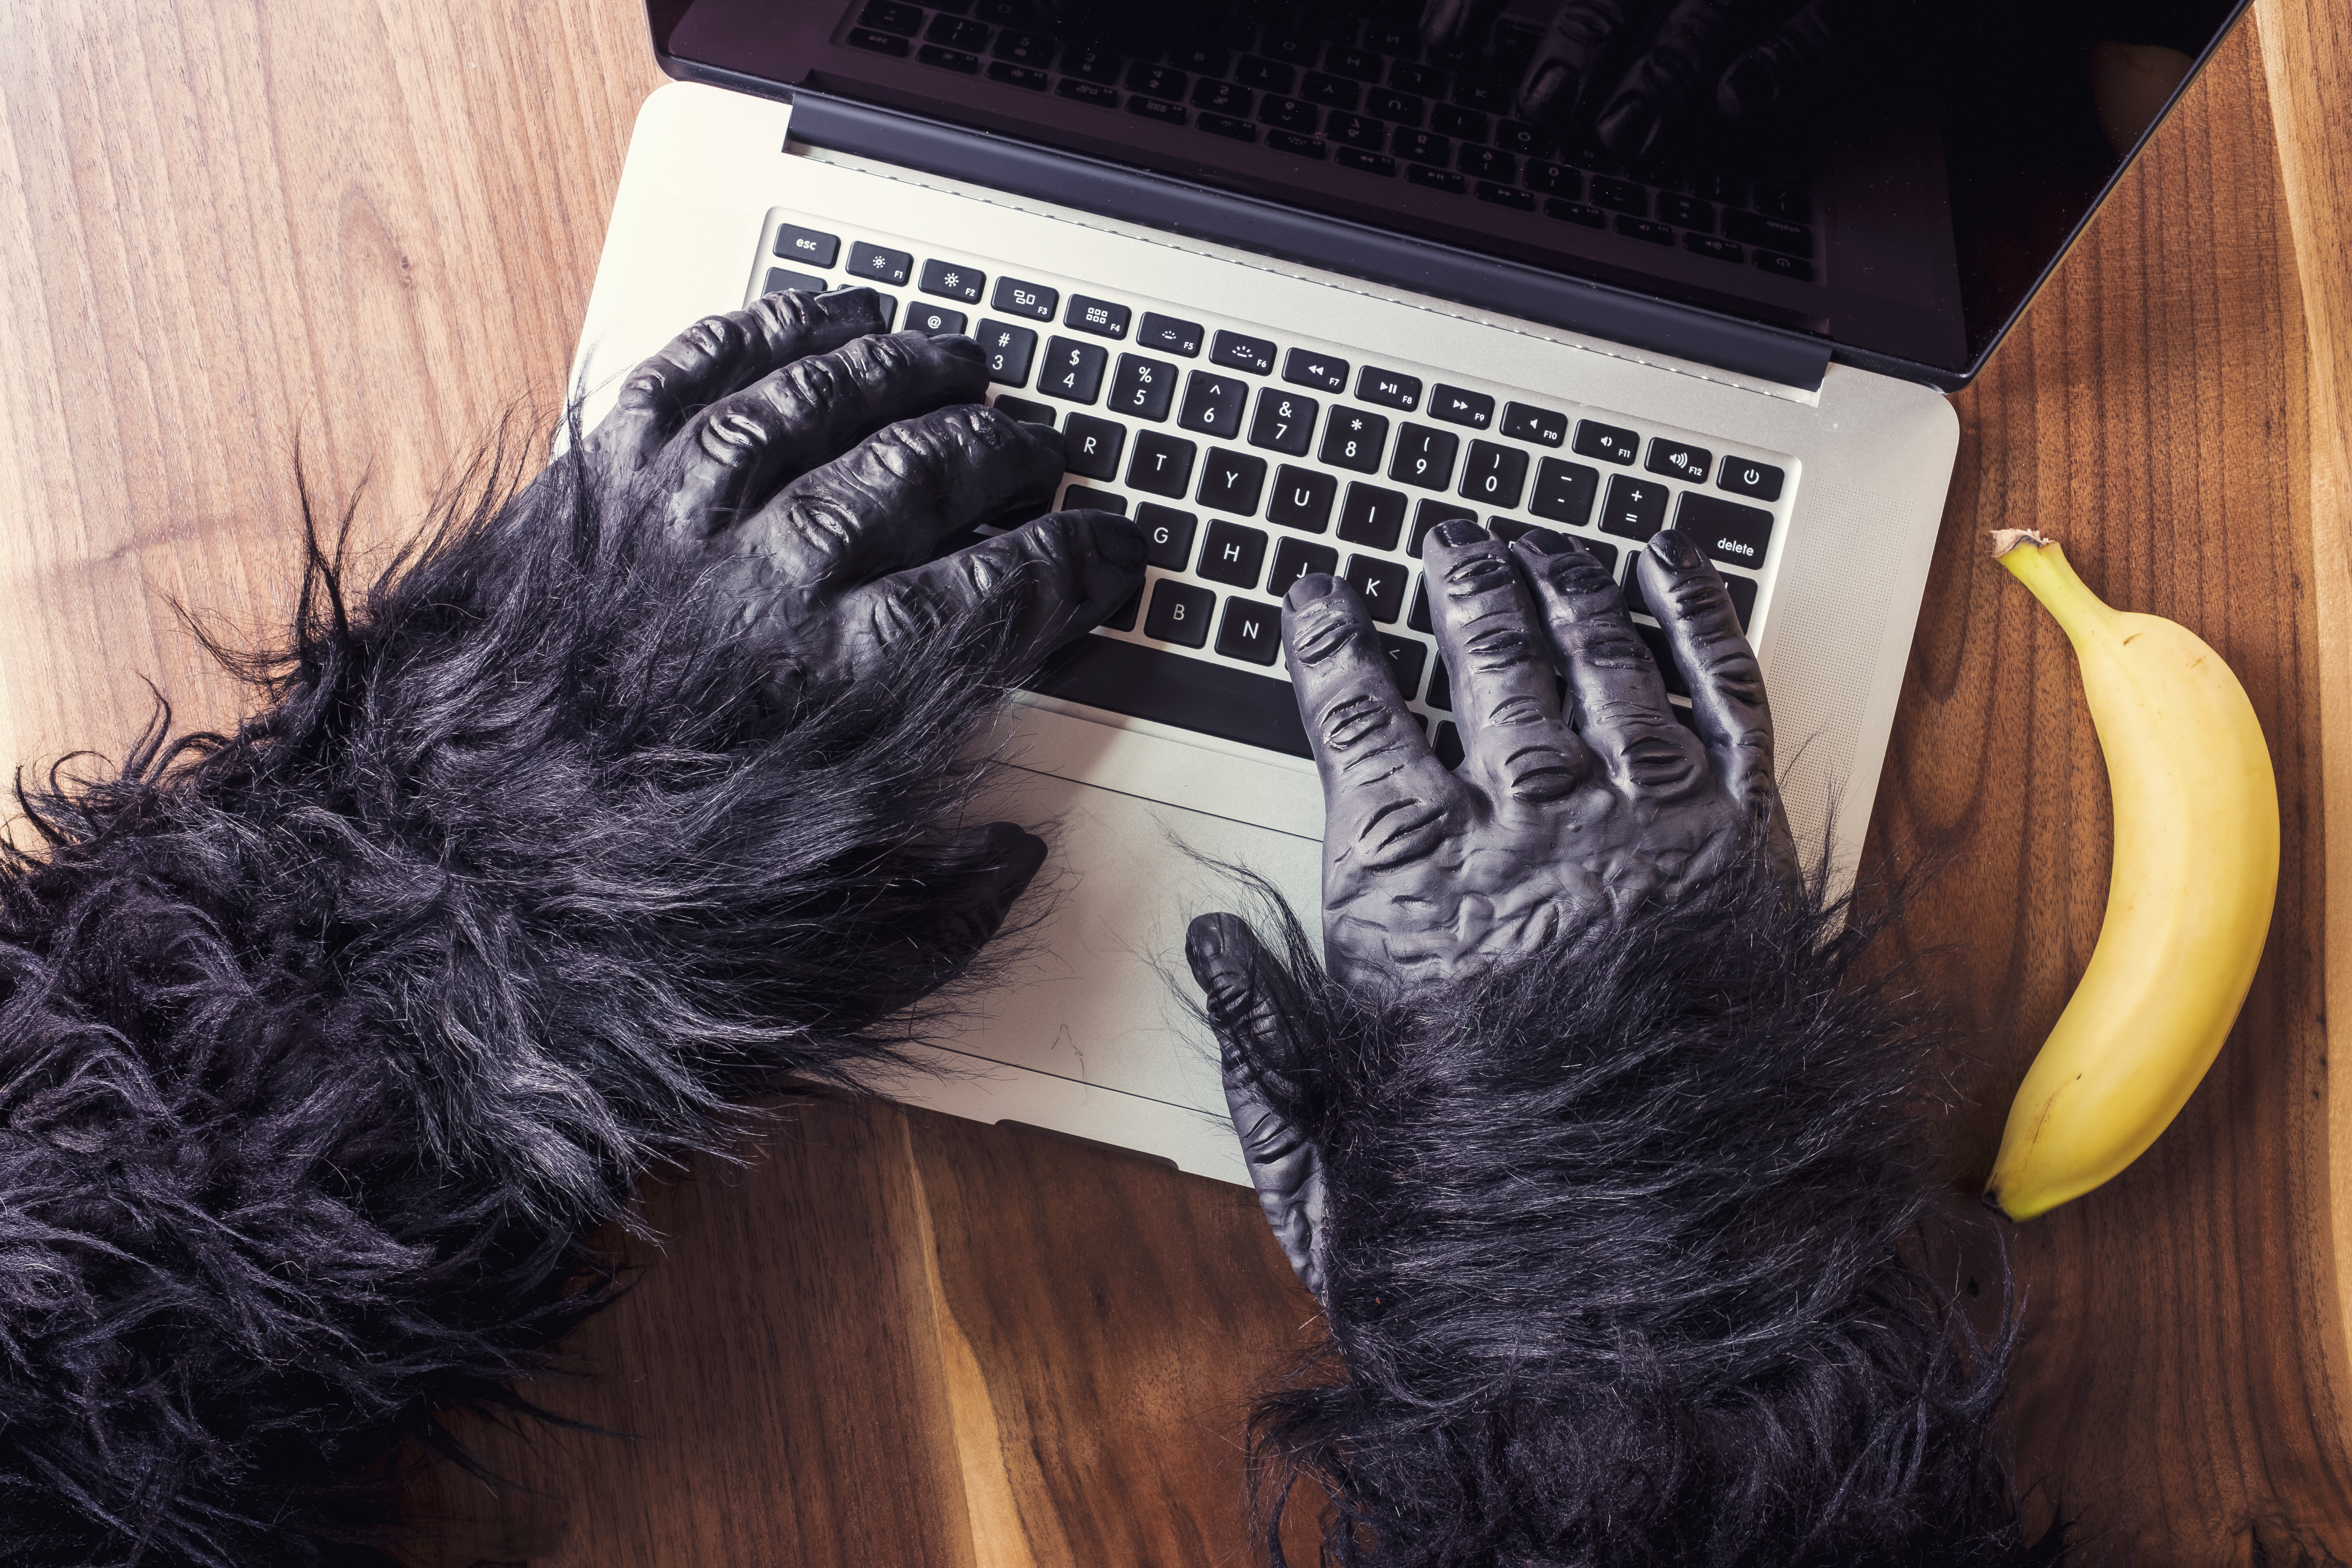 Gorilla hands on keyboard